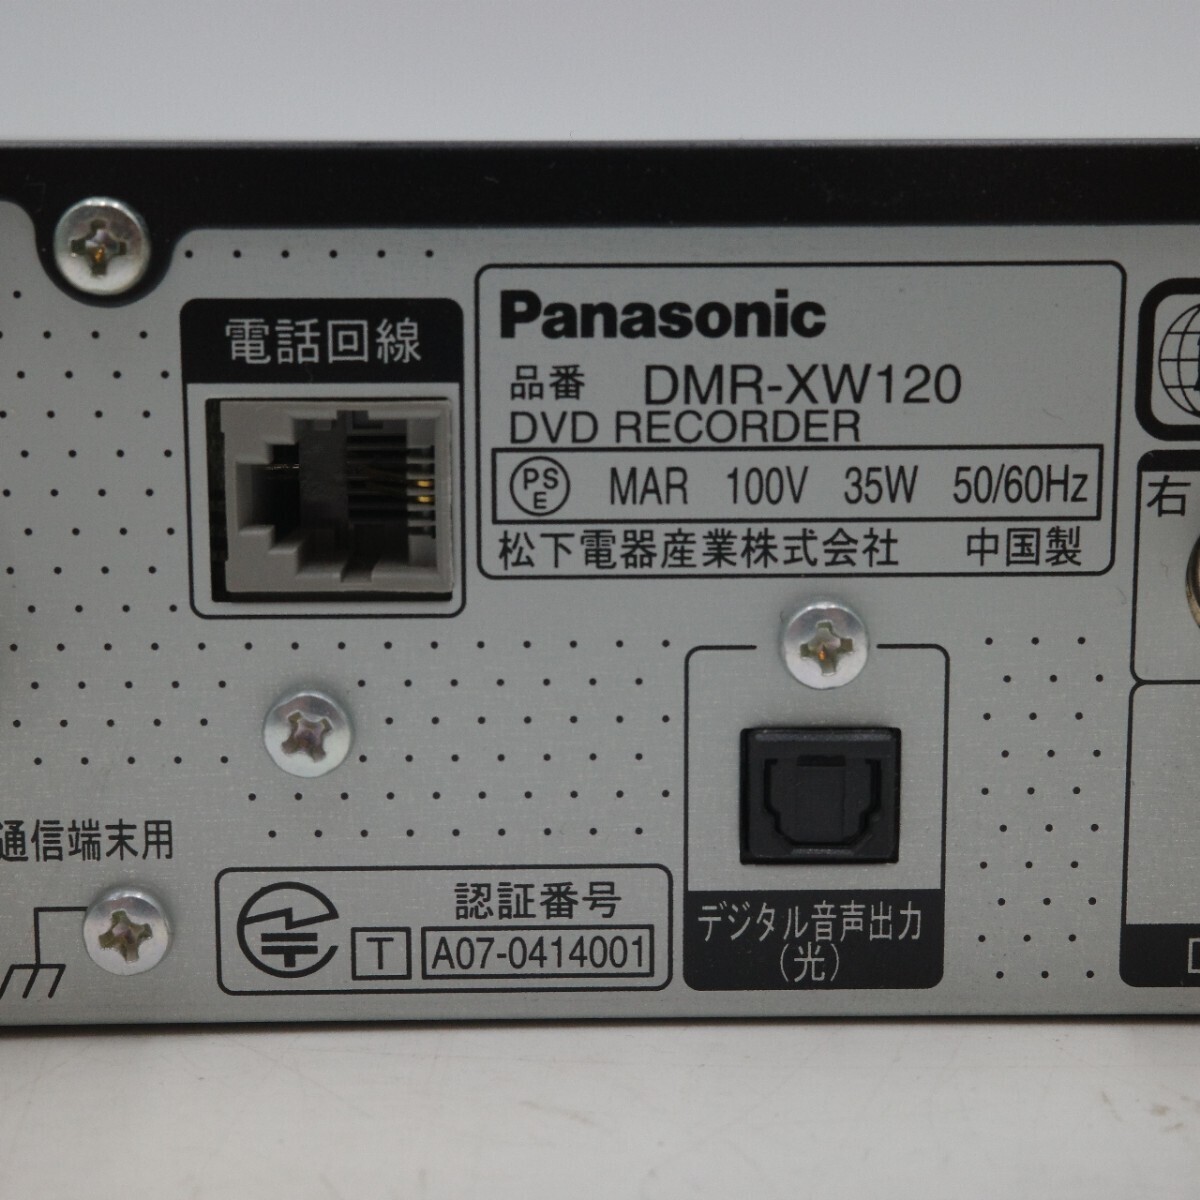 Panasonic Panasonic VIERA viera DVD магнитофон DMR-XW120 черный 2008 год производства корпус только текущее состояние товар 